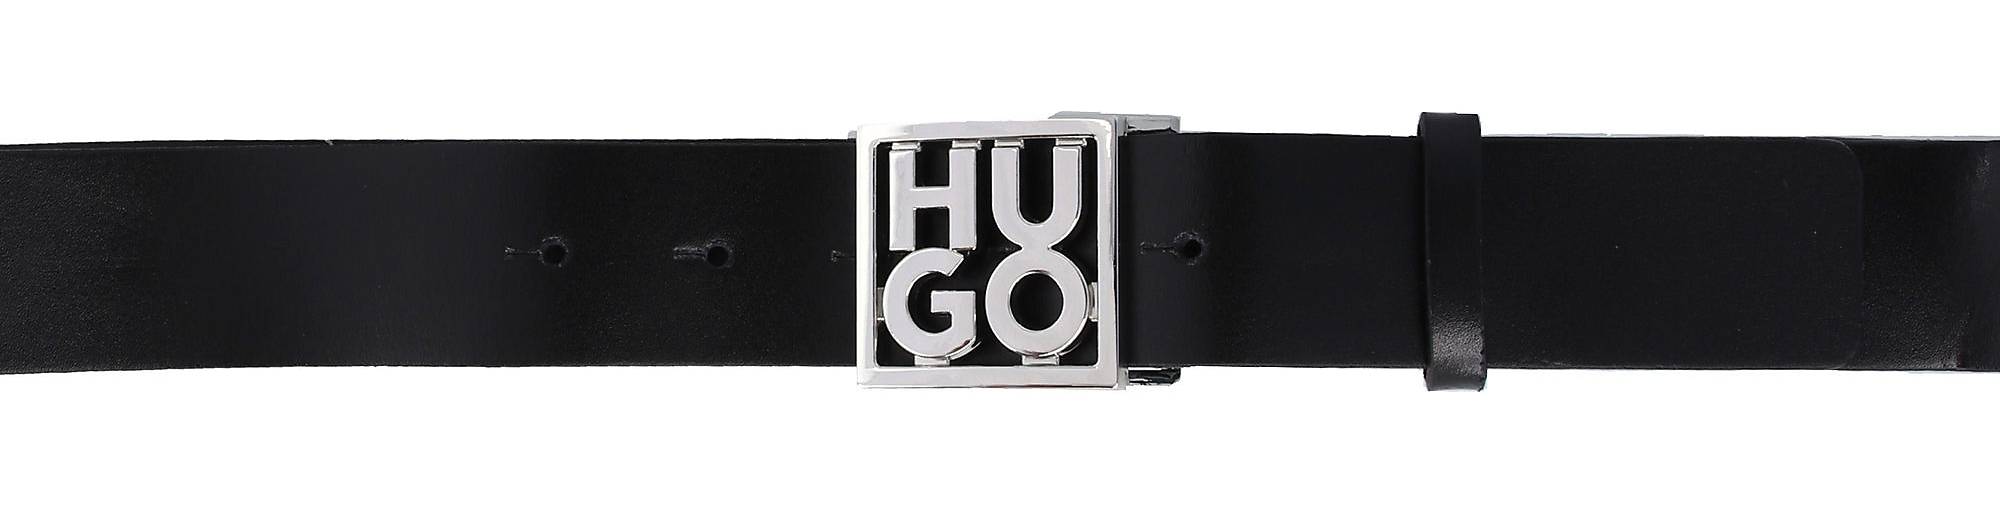 HUGO HU-GO Gürtel Leder in schwarz bestellen - 23294001